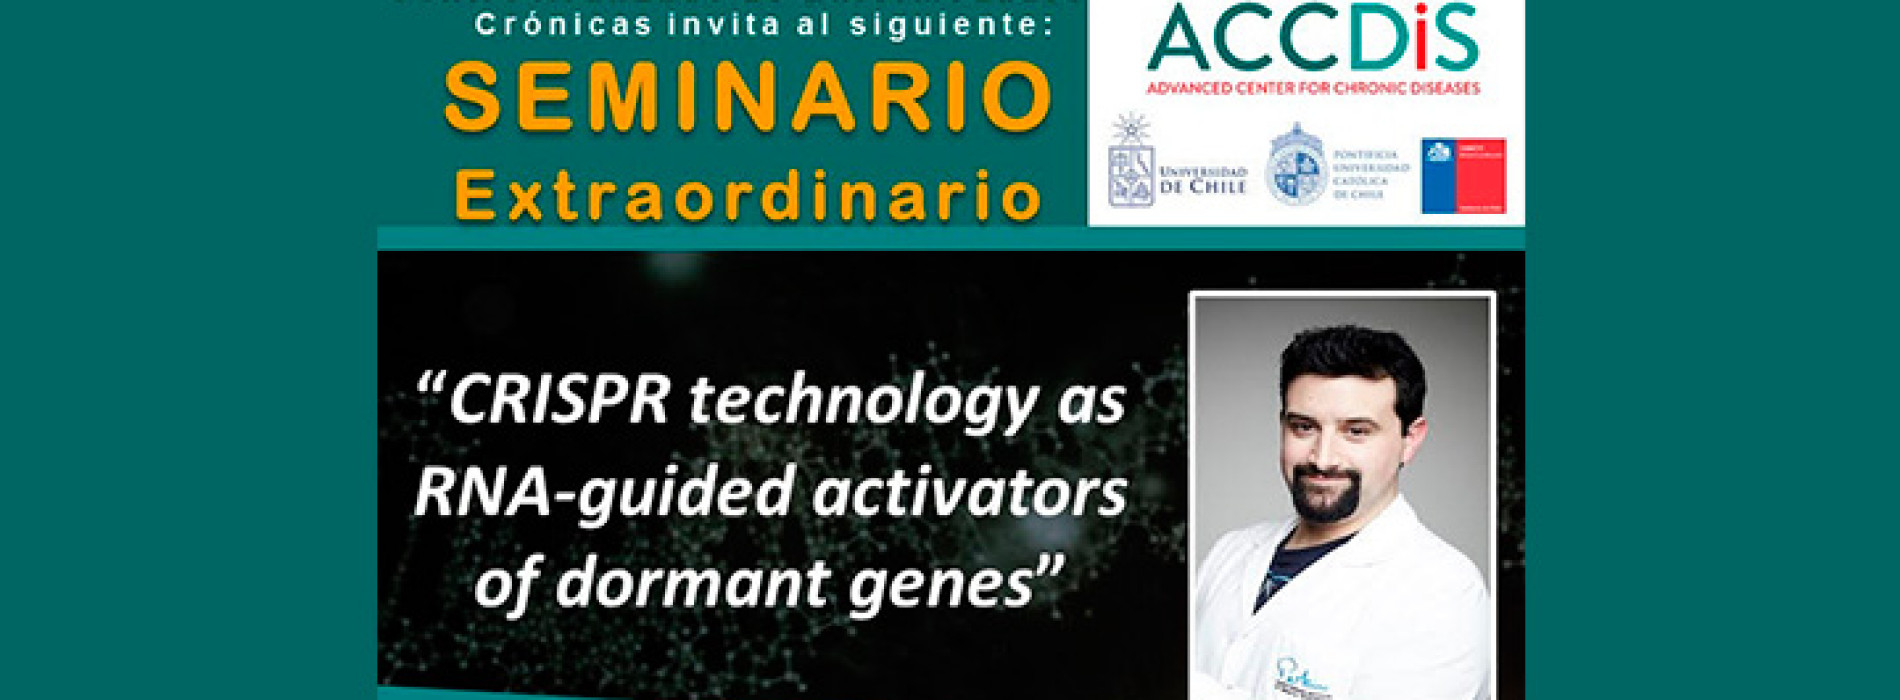 Seminario Extraordinario ACCDiS «CRISPR technology as RNA-guided activators of dormant genes»